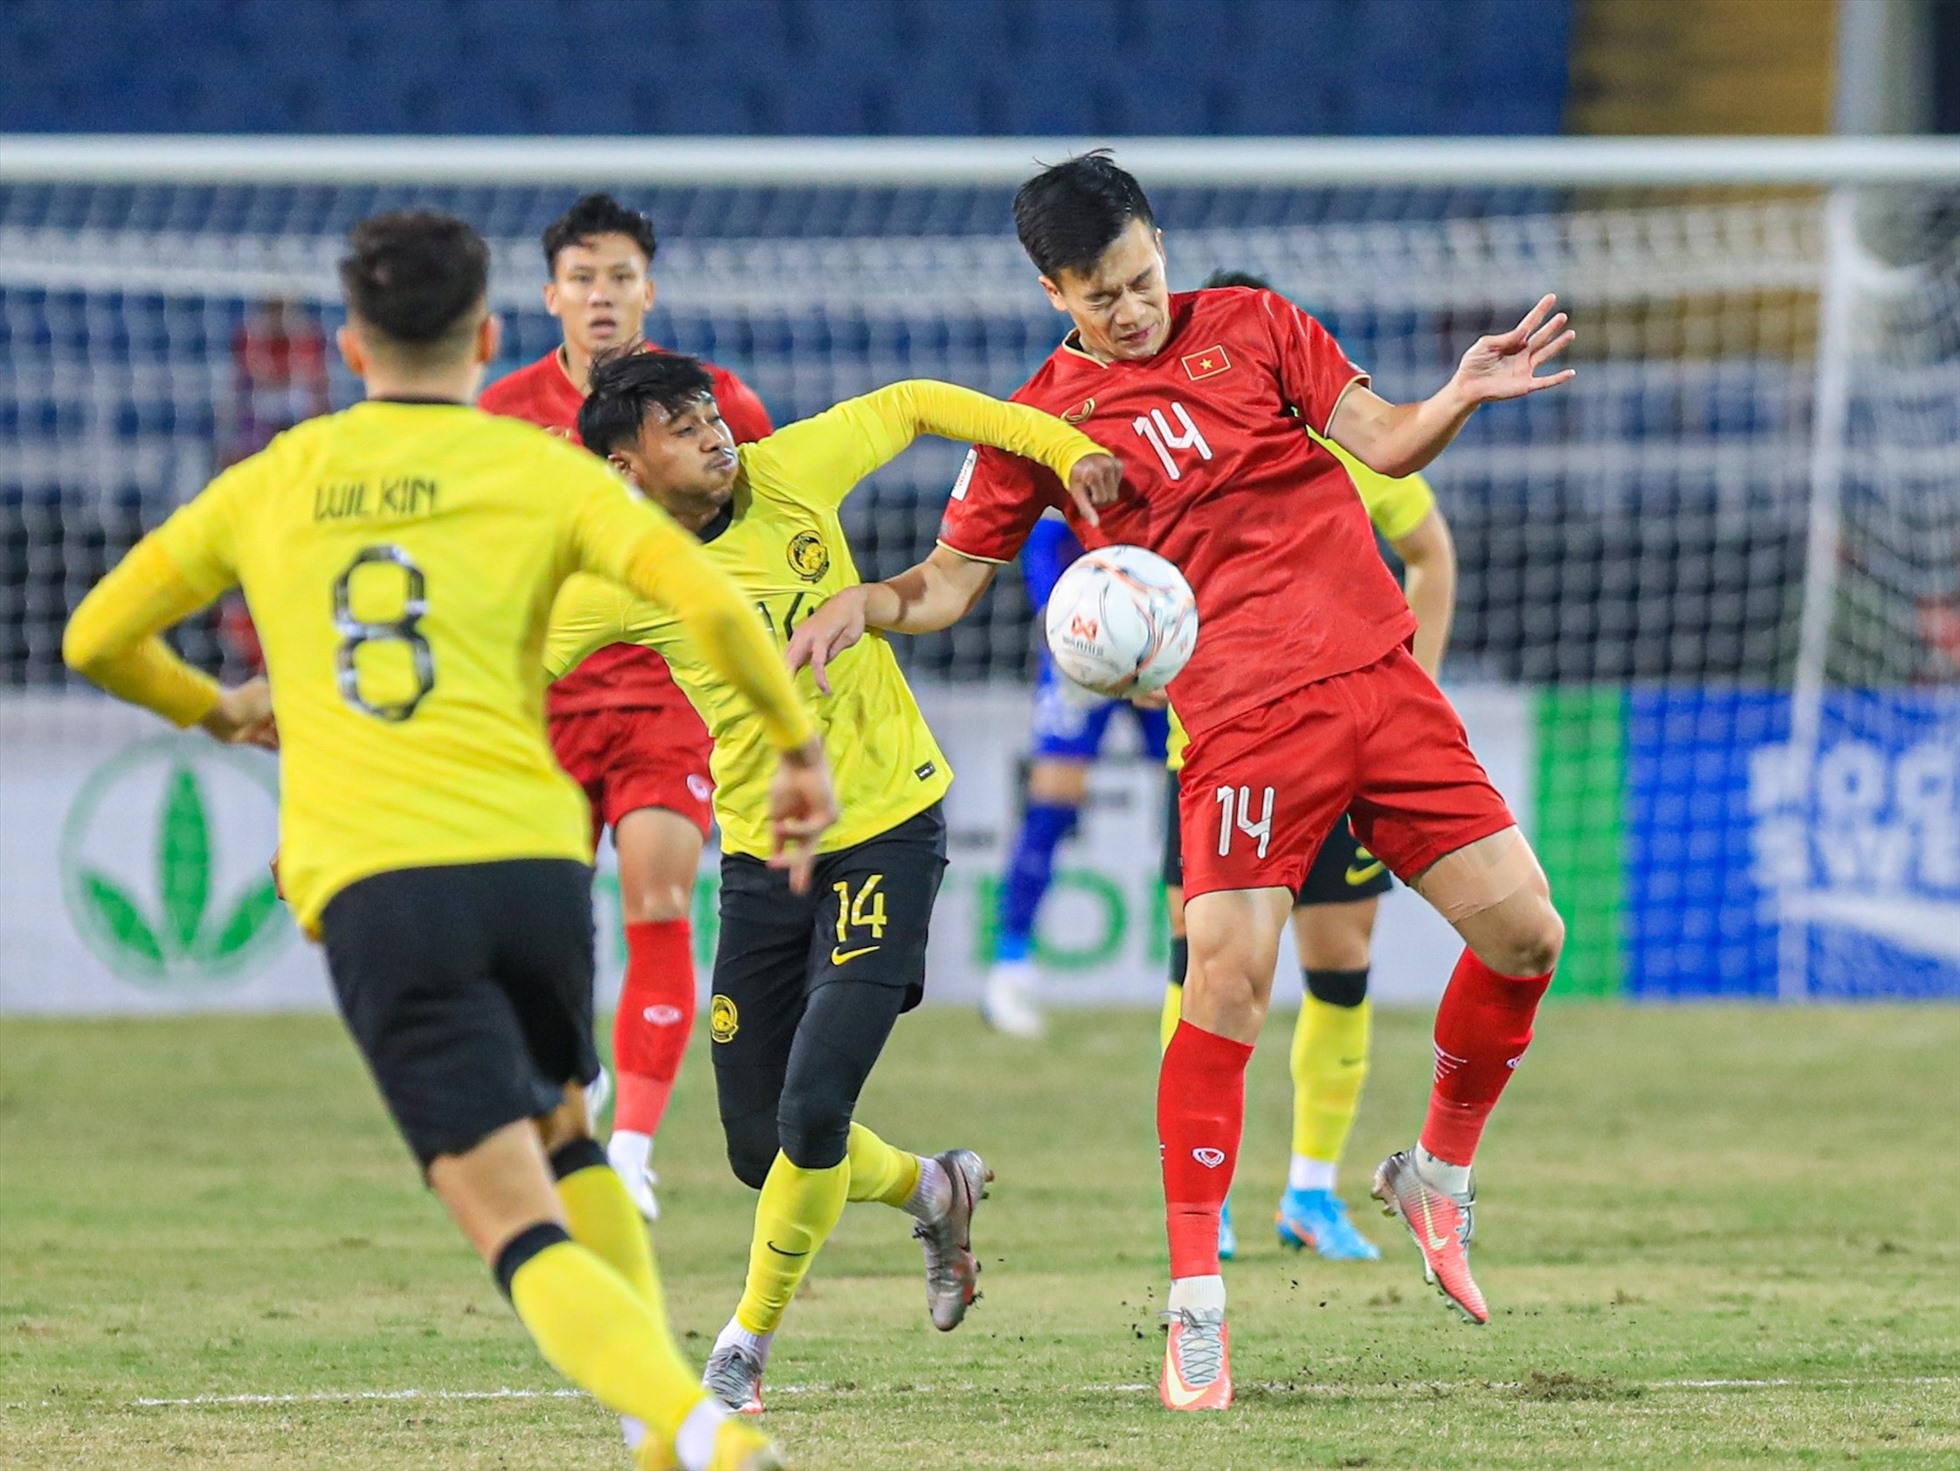 Tiếp đón Malaysia trên sân nhà, tuyển Việt Nam gặp rất nhiều khó khăn, nhất là trong hiệp đấu đầu tiên khi cả hai đội bóng đang rất sung sức.